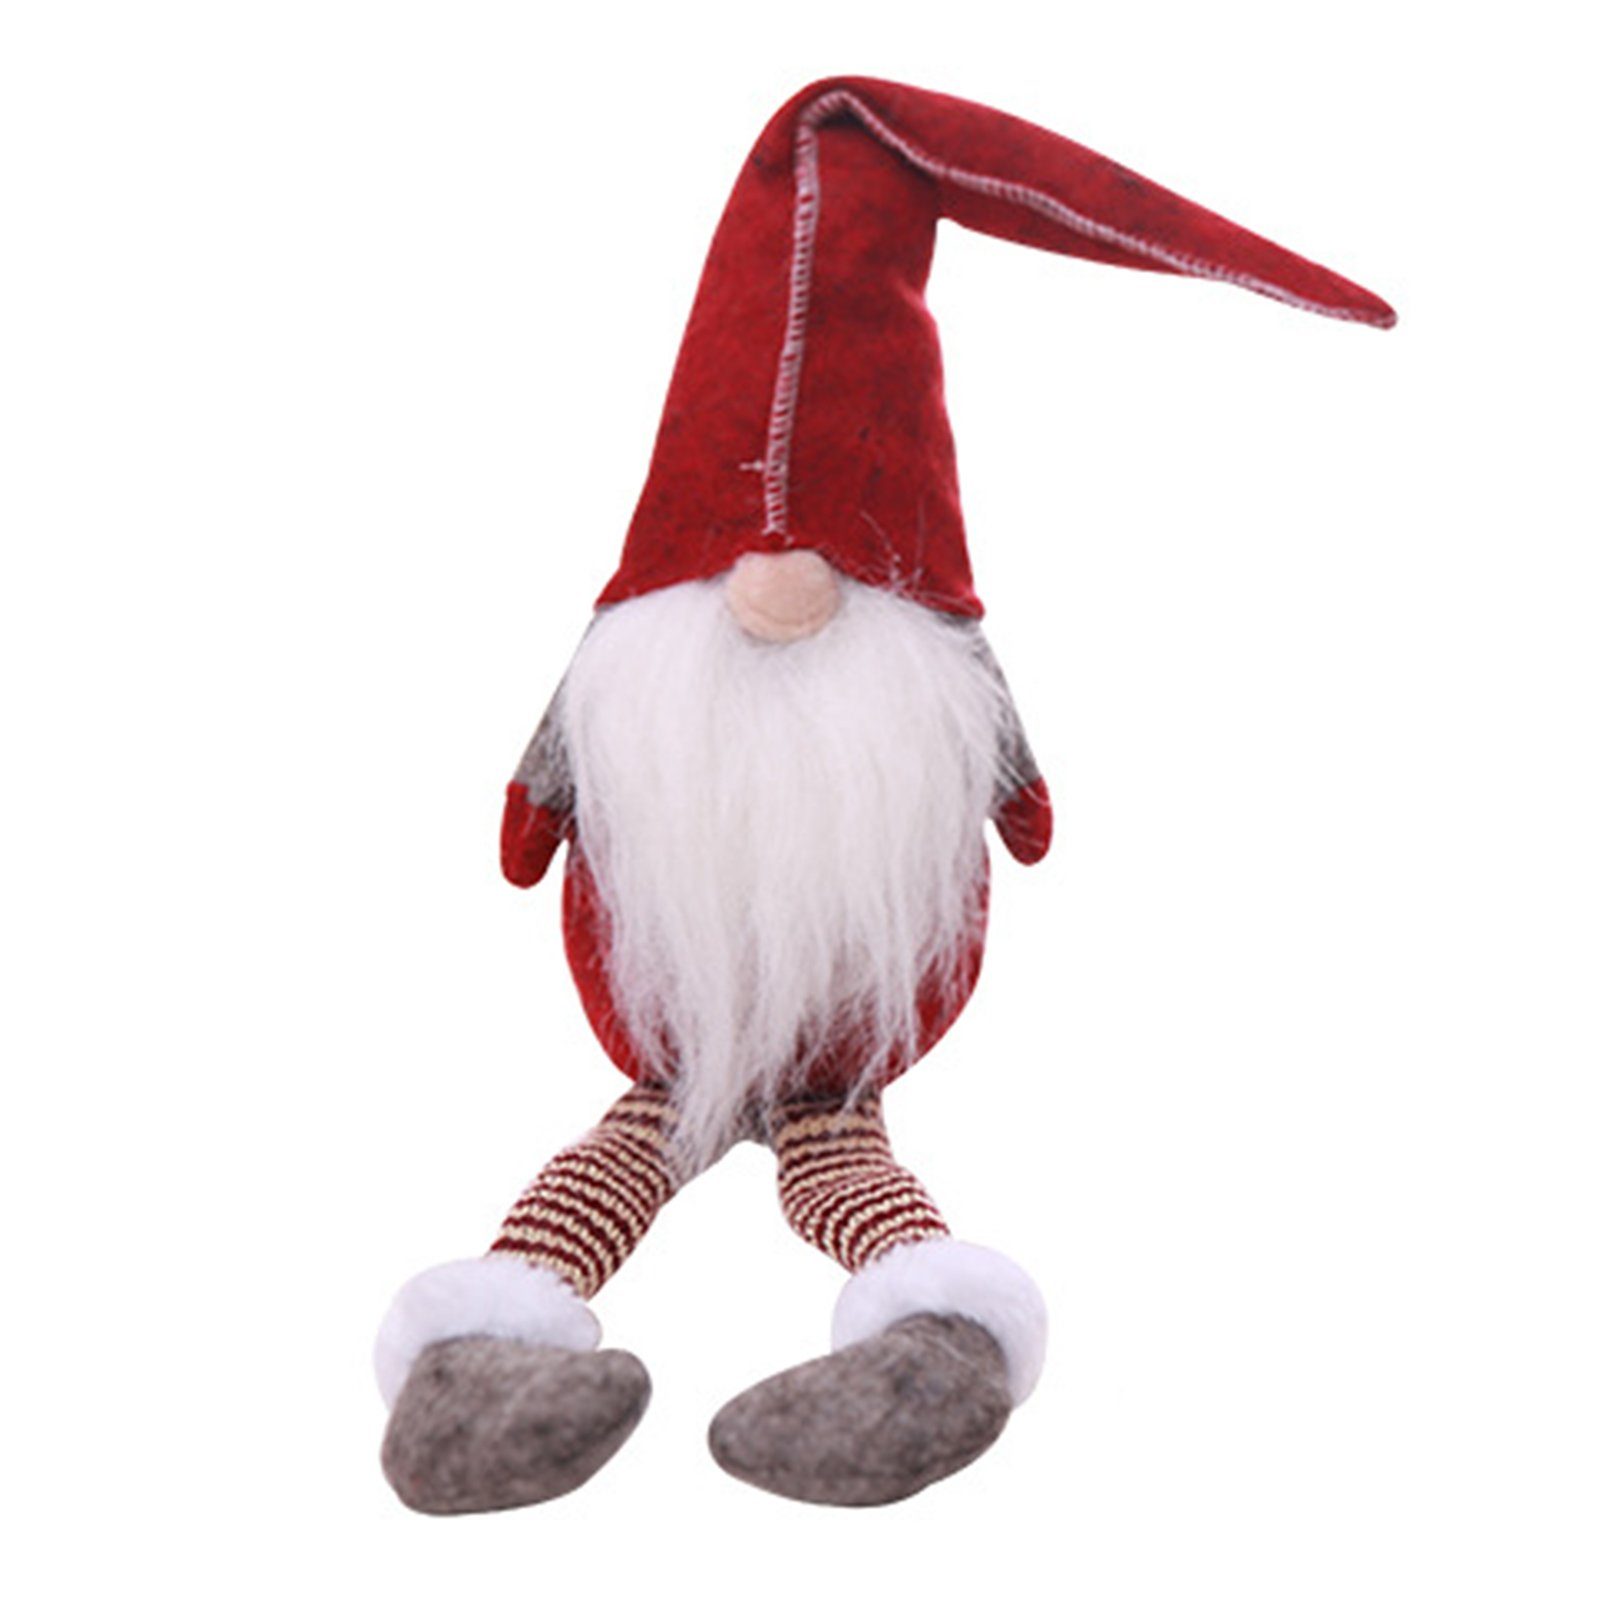 Blusmart Christbaumschmuck Gesichtslose Weihnachtspuppe Mit Langen Beinen, Personalisierte red